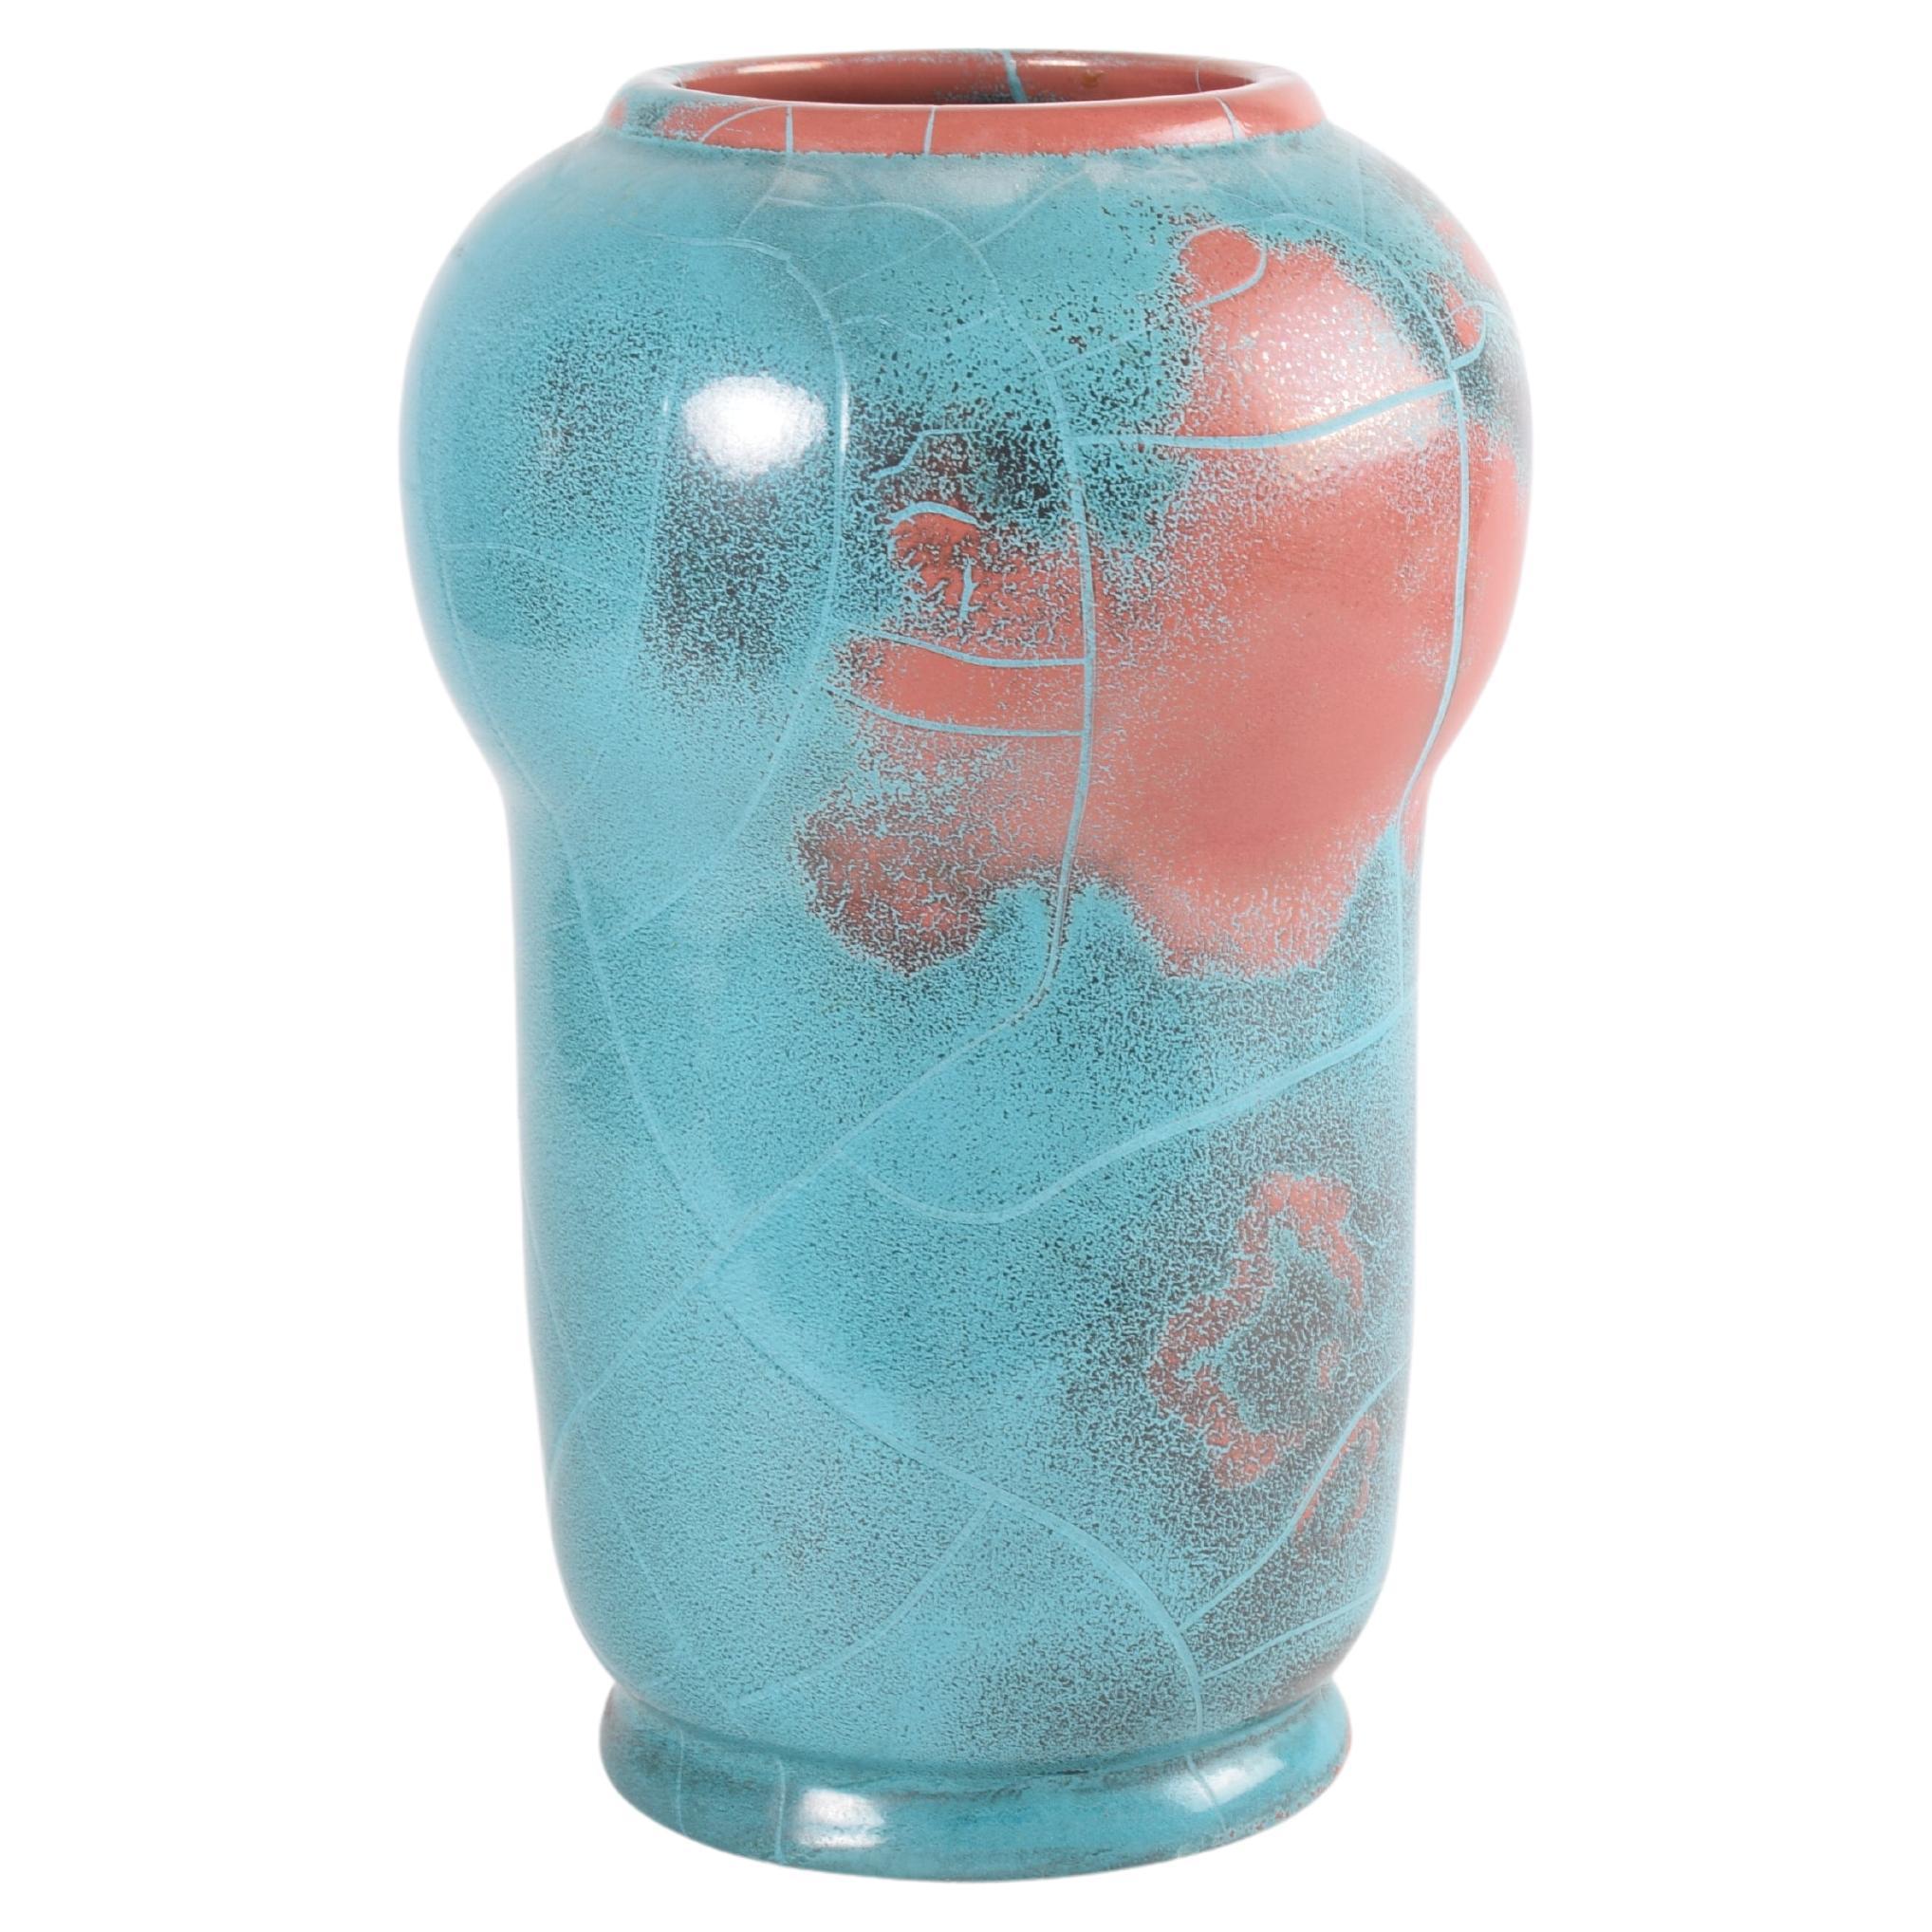 Rare Danish P. Ipsens Enke Tall Vase Turquoise Red "Danit" Glaze, Ceramic 1930s For Sale